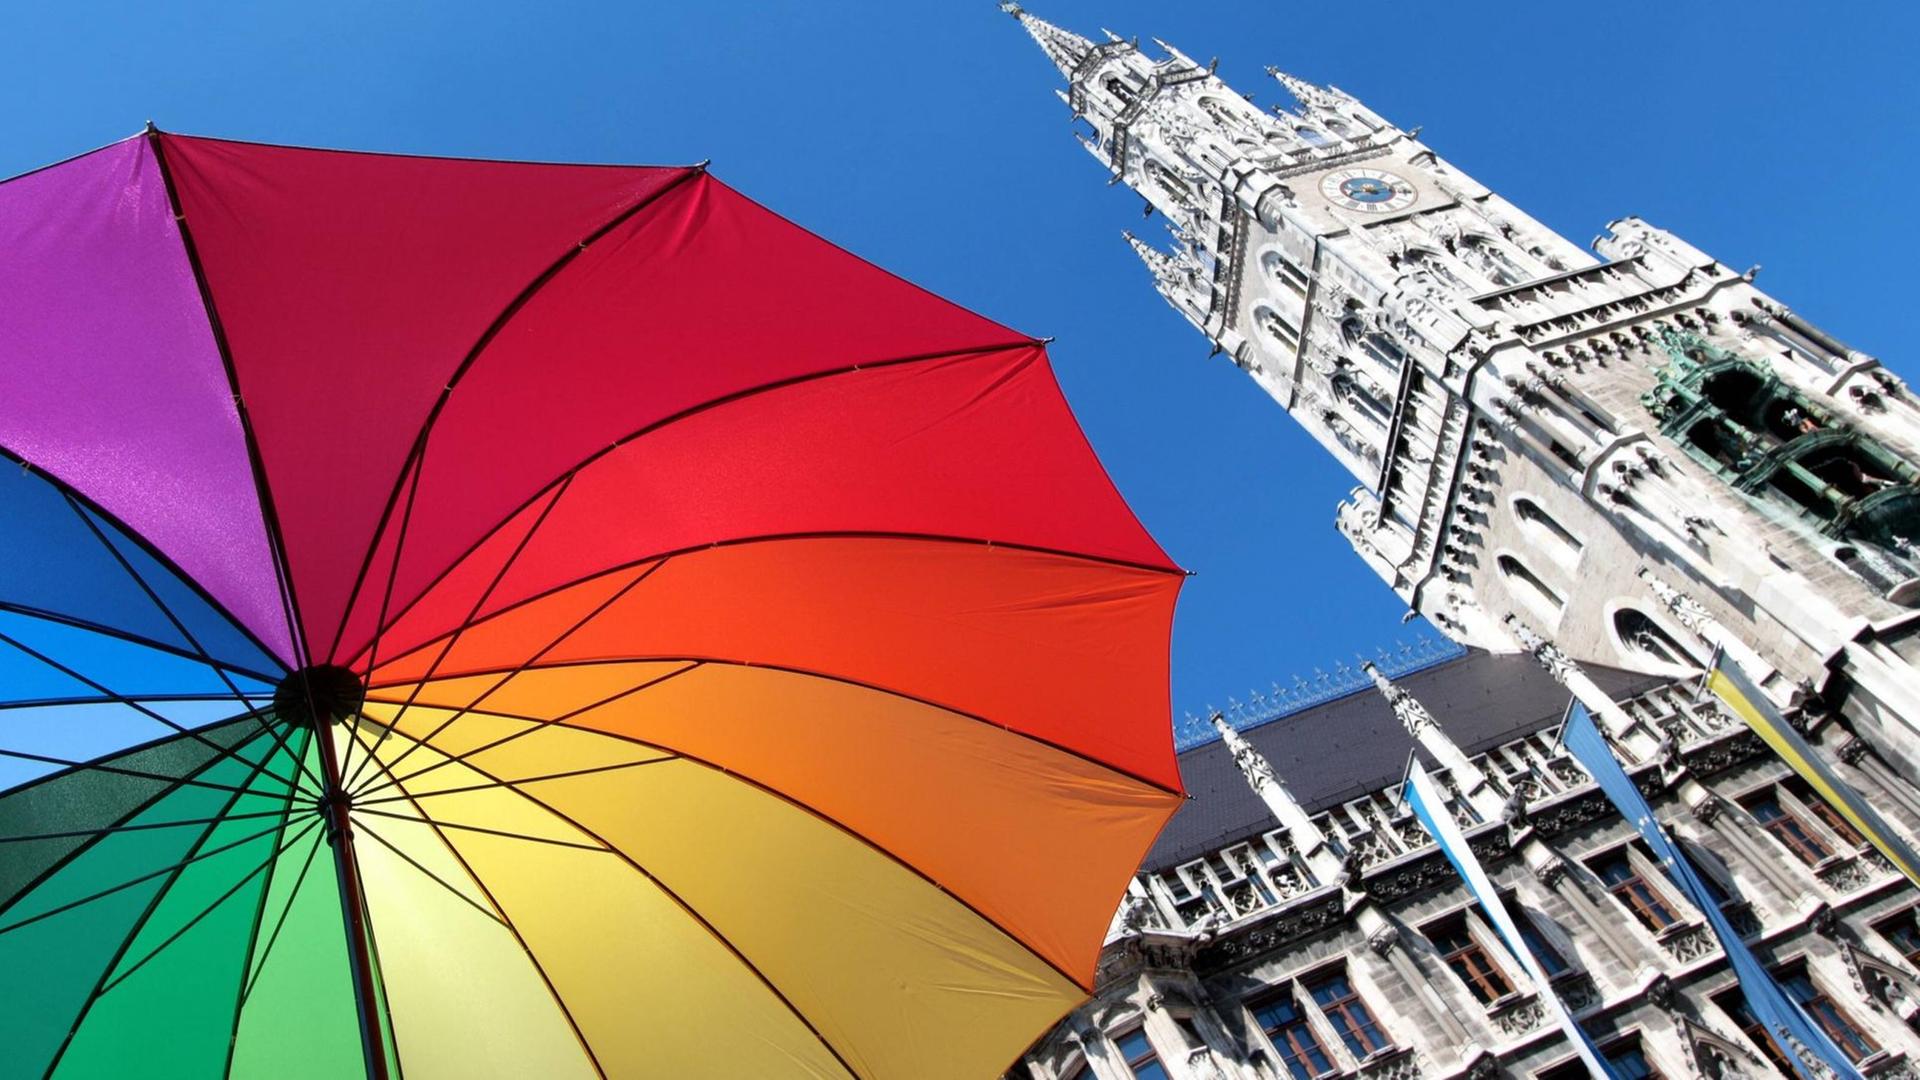 Sonnenschirm in Farben der Regenbogenflagge vor dem Rathaus in München